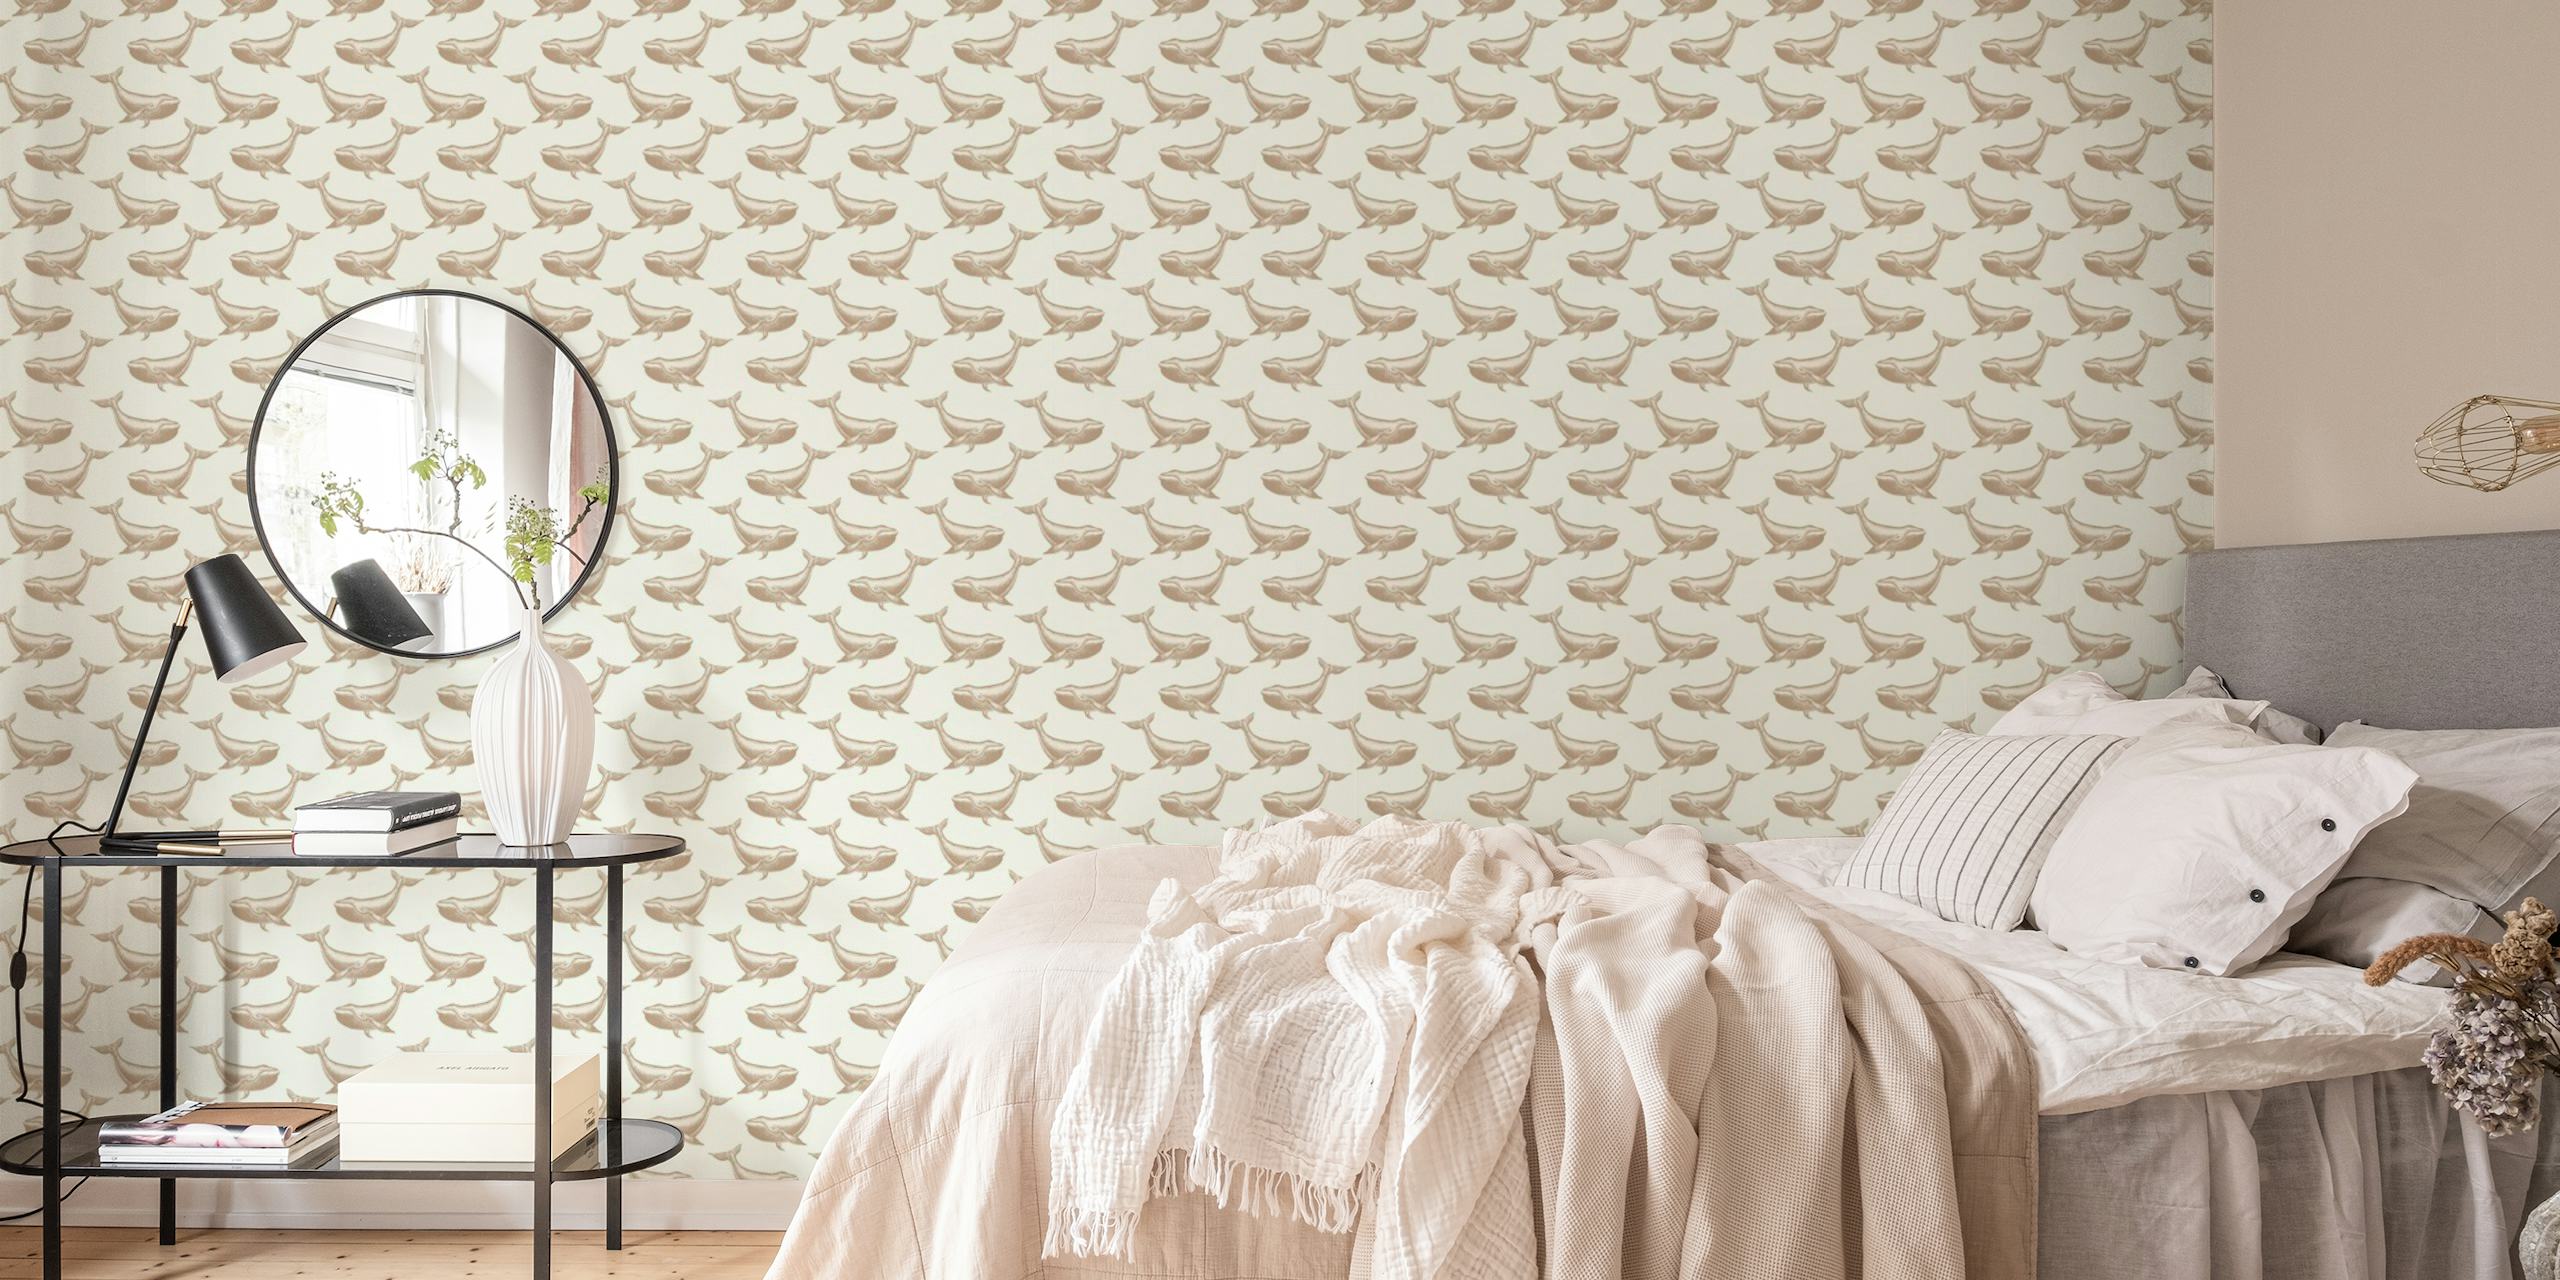 Stiliserat valsiluettmönster på en beige fondtapet